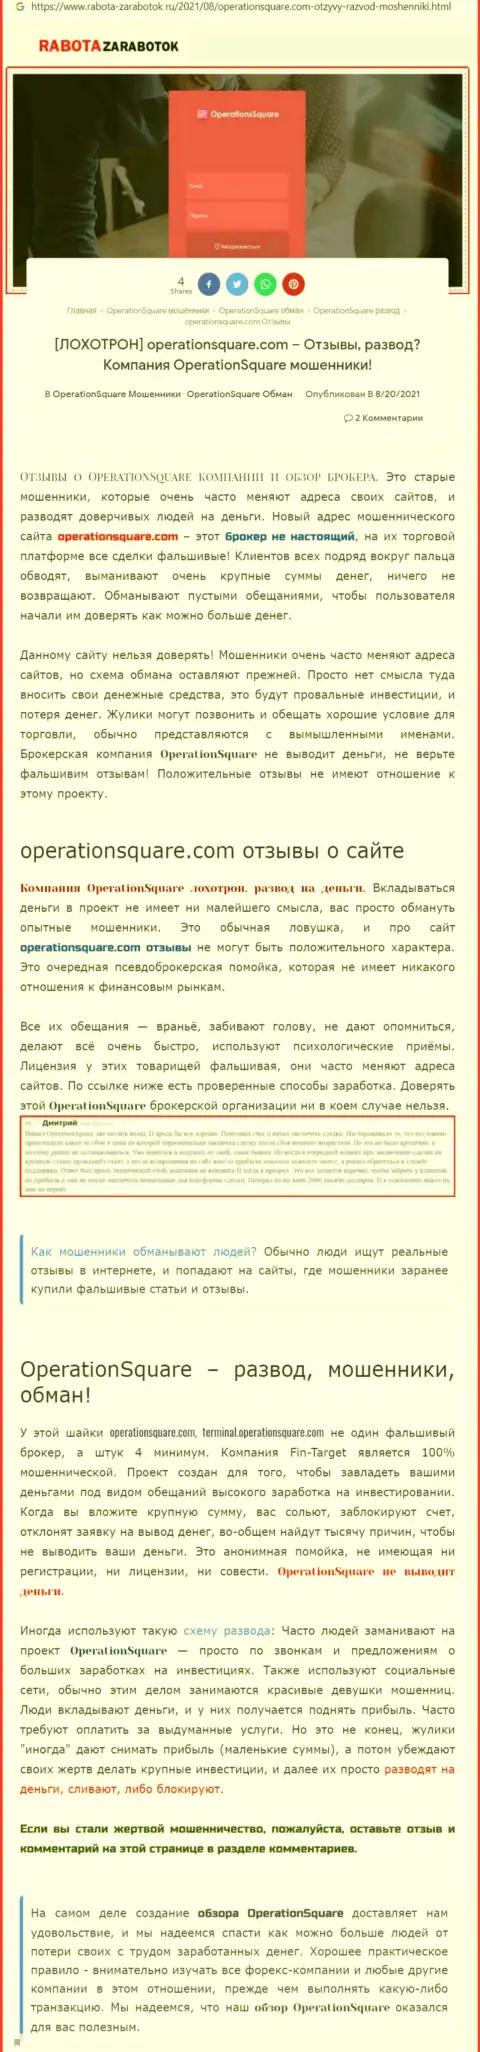 OperationSquare - это КИДАЛЫ !!! Методы обмана и достоверные отзывы пострадавших